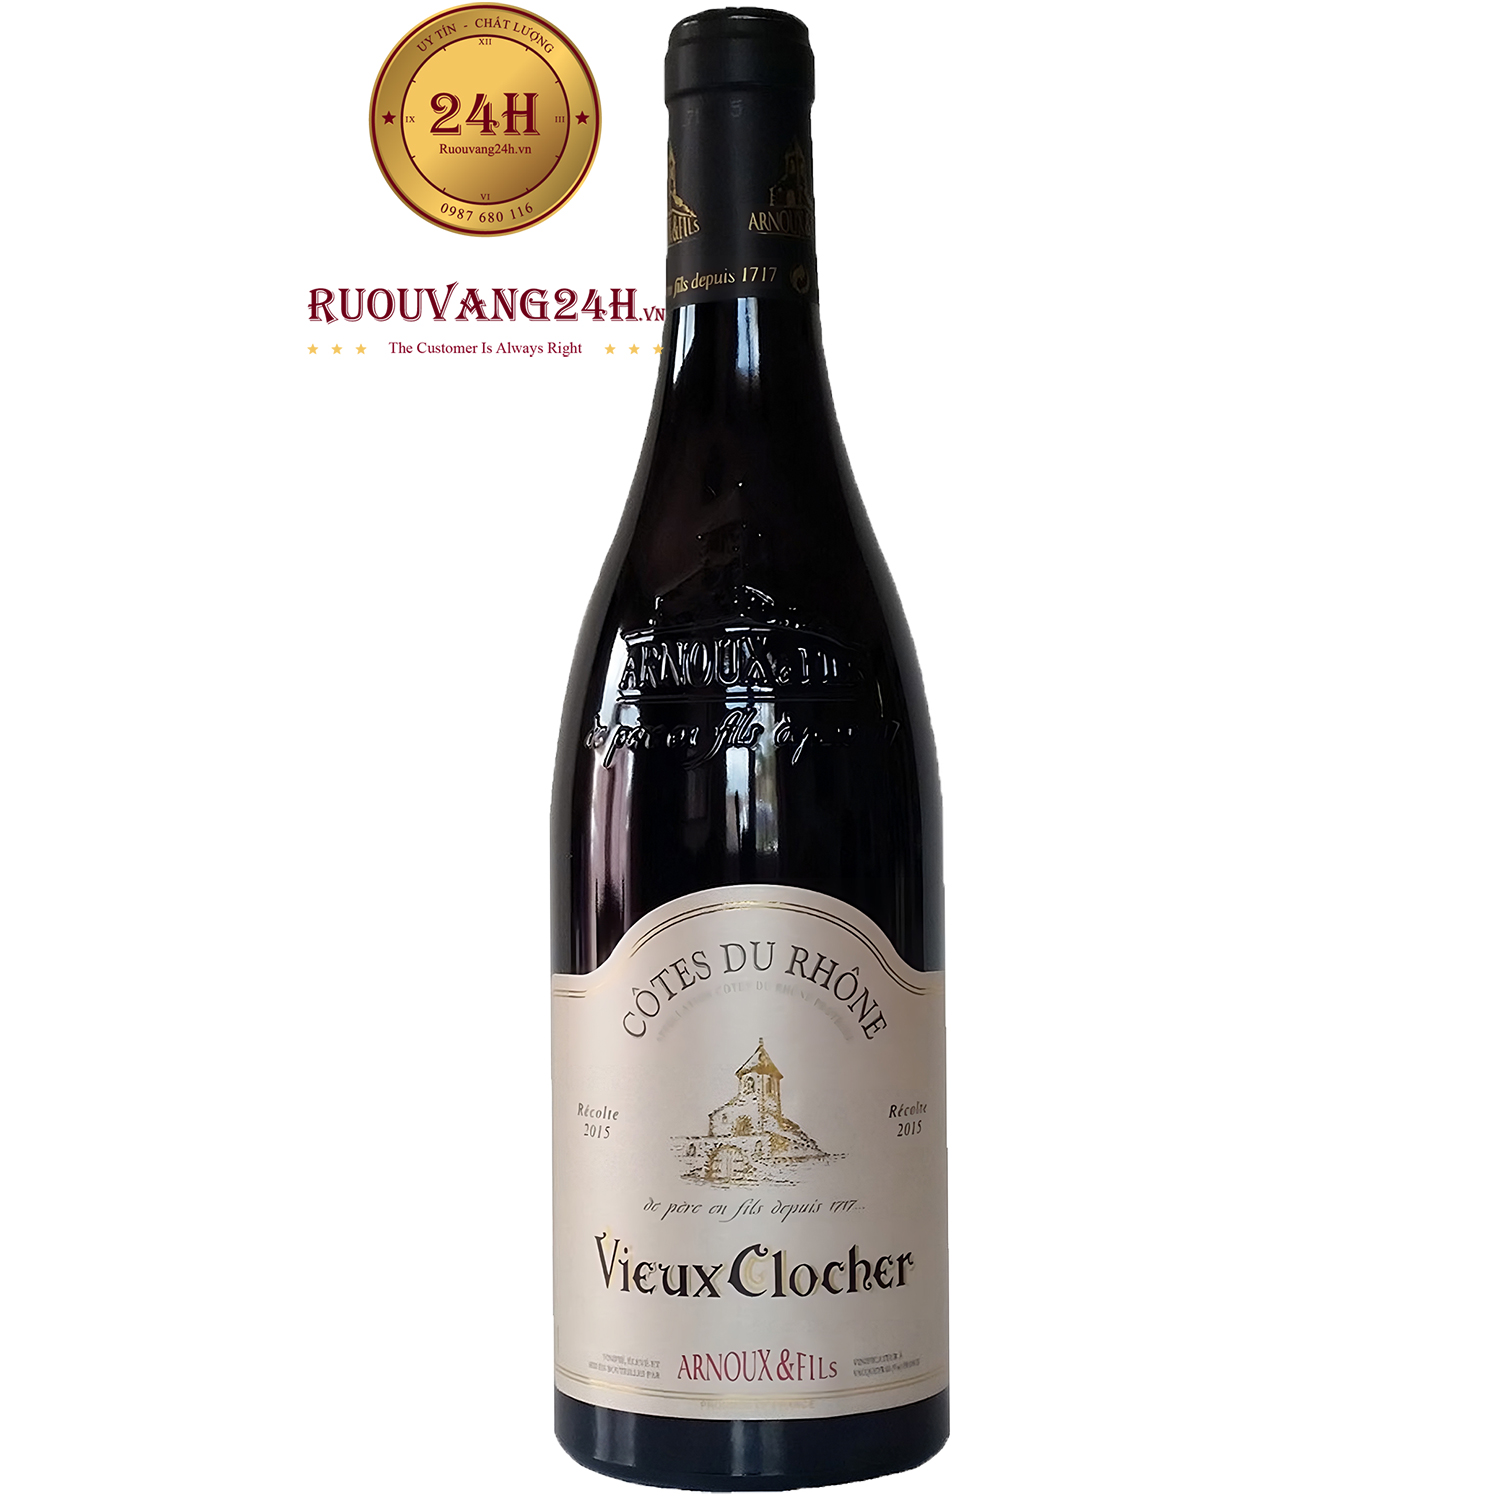 Rượu Vang Vieux Clocher Chateauneuf Du Pape